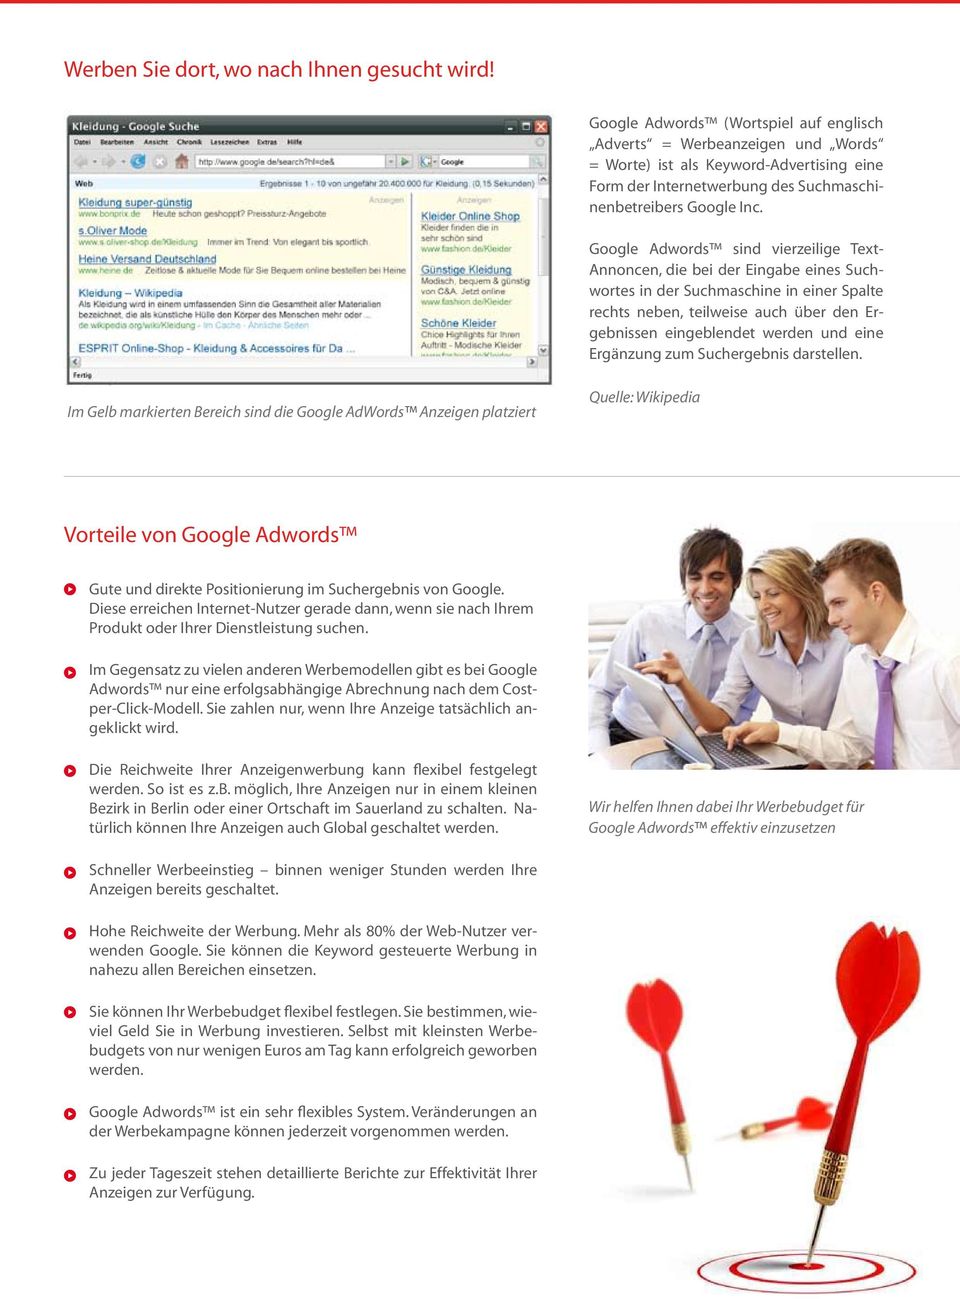 Google Adwords sind vierzeilige Text- Annoncen, die bei der Eingabe eines Suchwortes in der Suchmaschine in einer Spalte rechts neben, teilweise auch über den Ergebnissen eingeblendet werden und eine